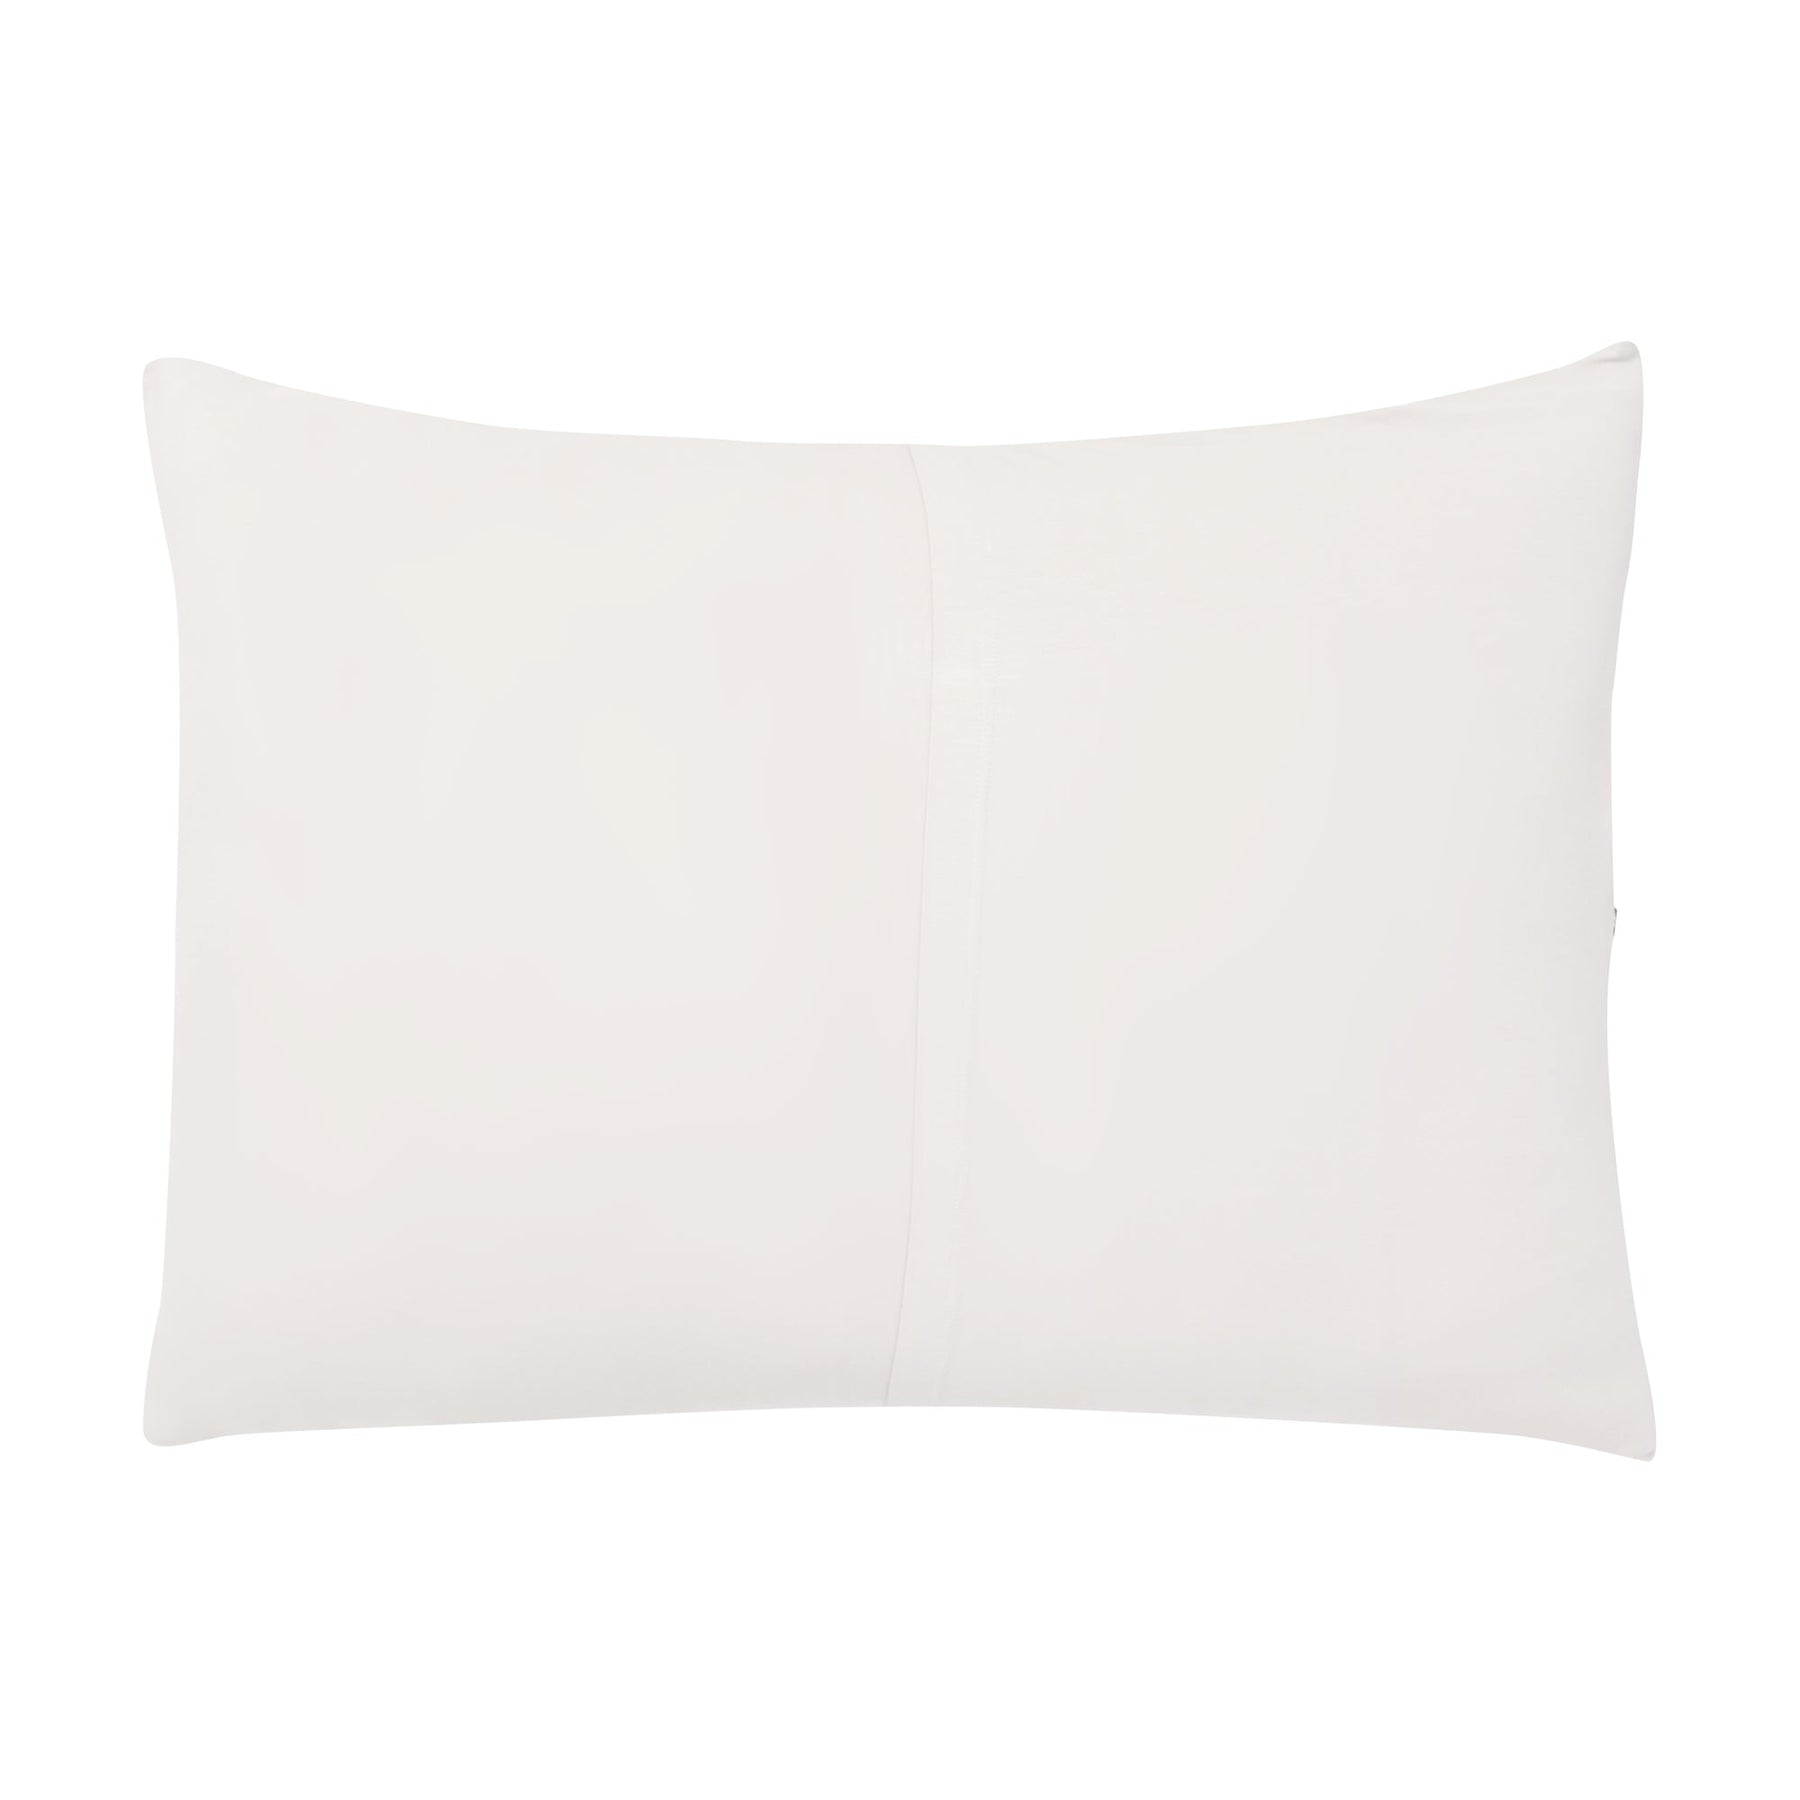 Kyte Baby Standard Pillow Case Oat / Standard Standard Pillowcase in Oat